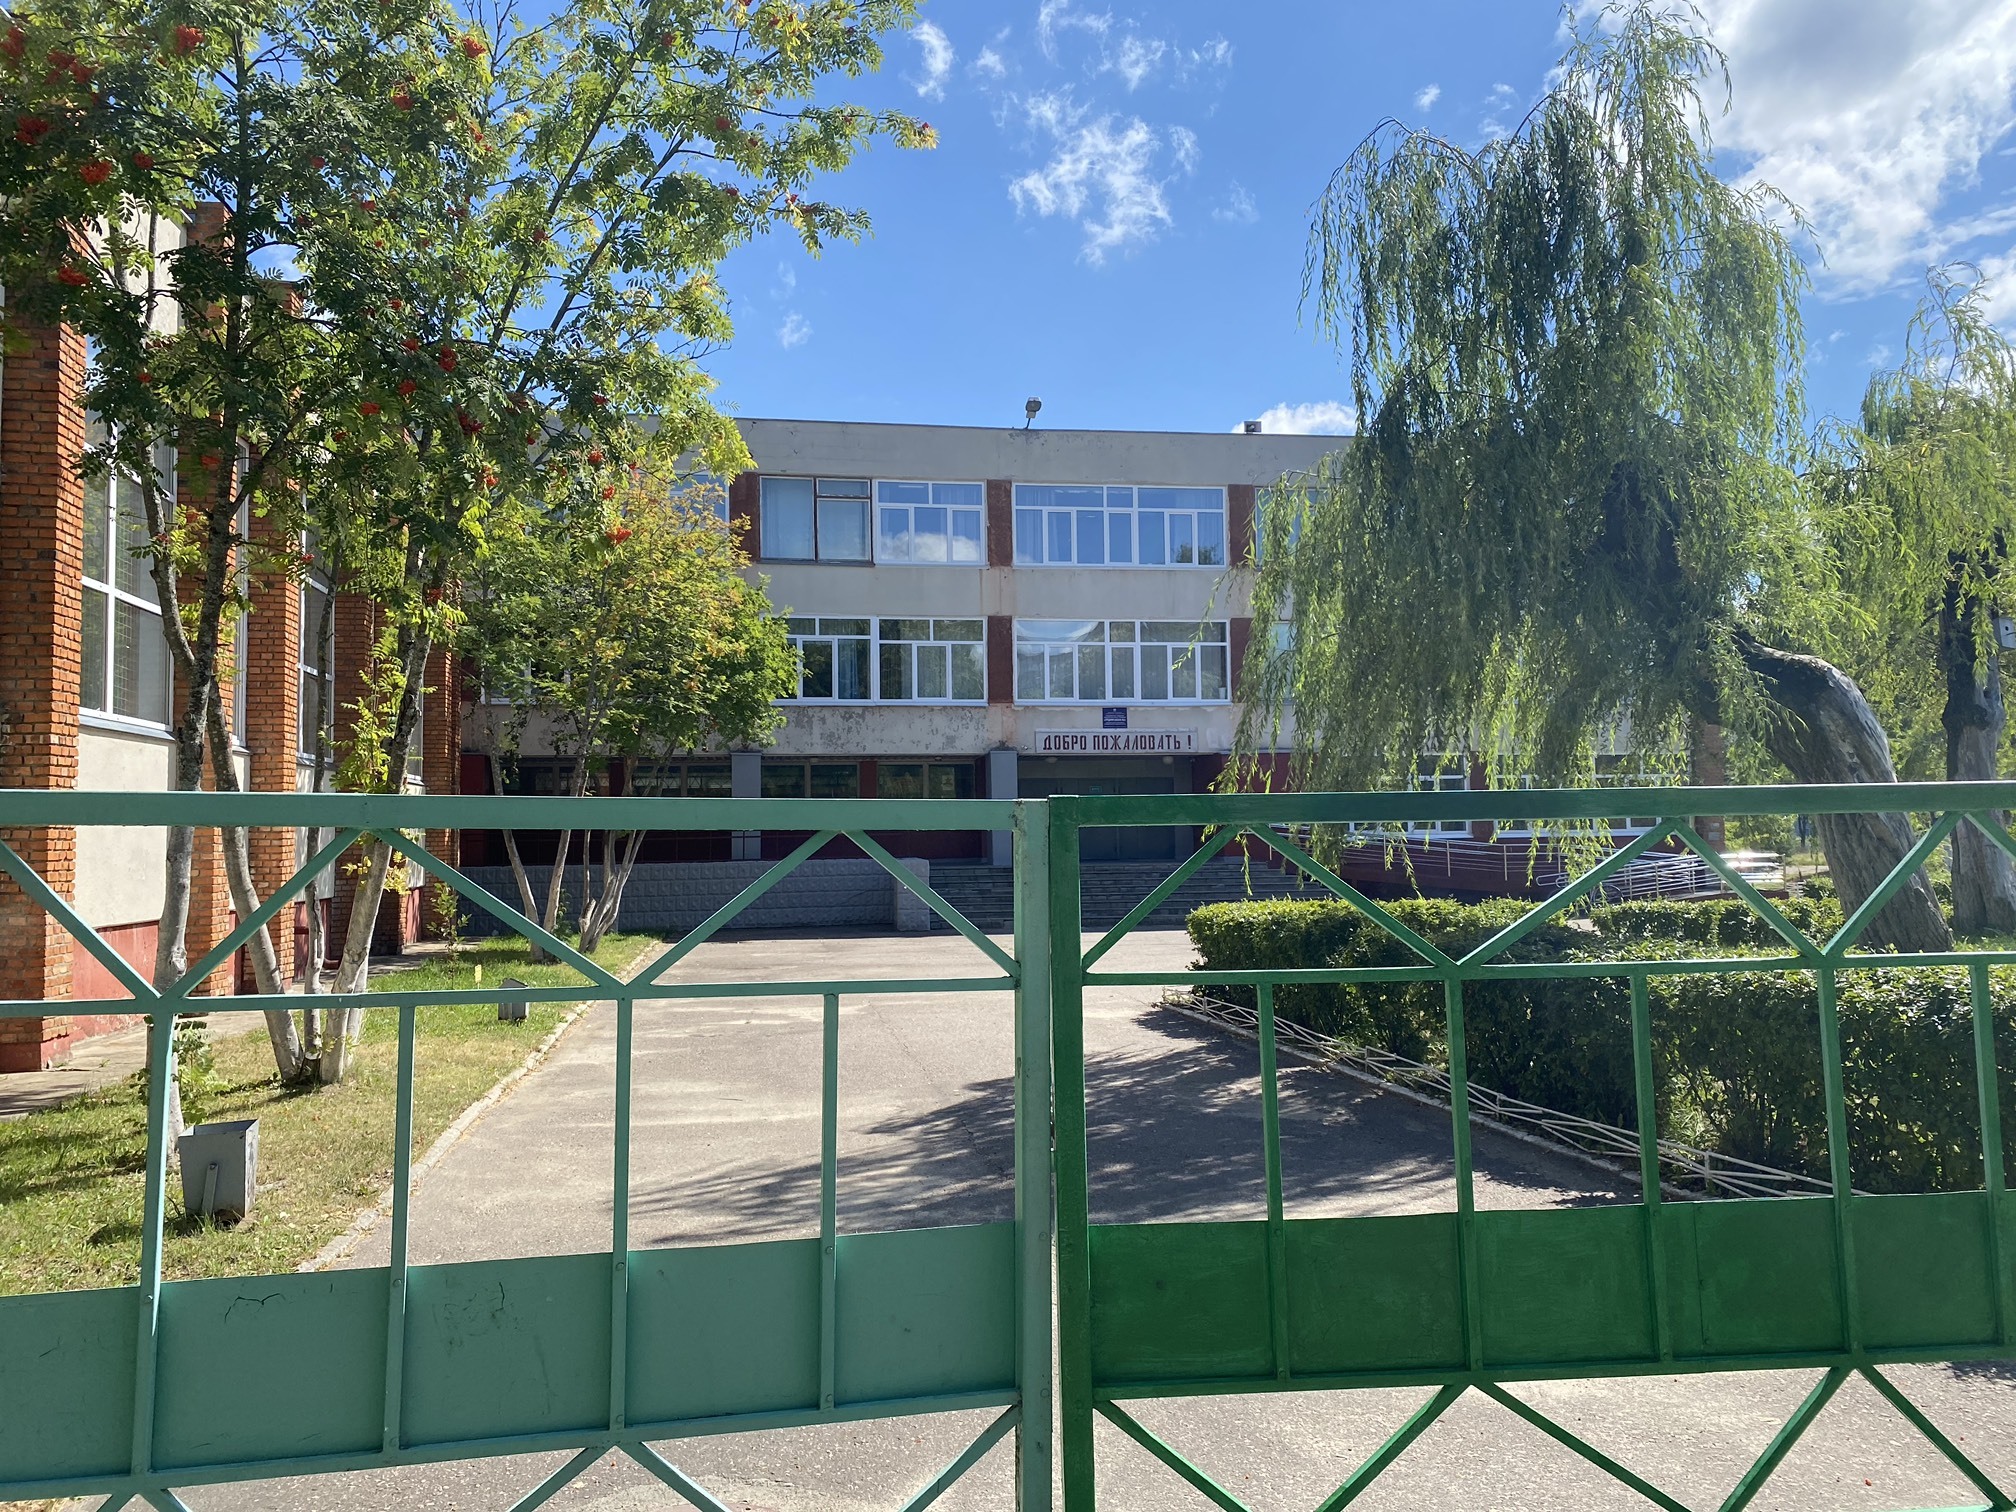 изображение входа в школу